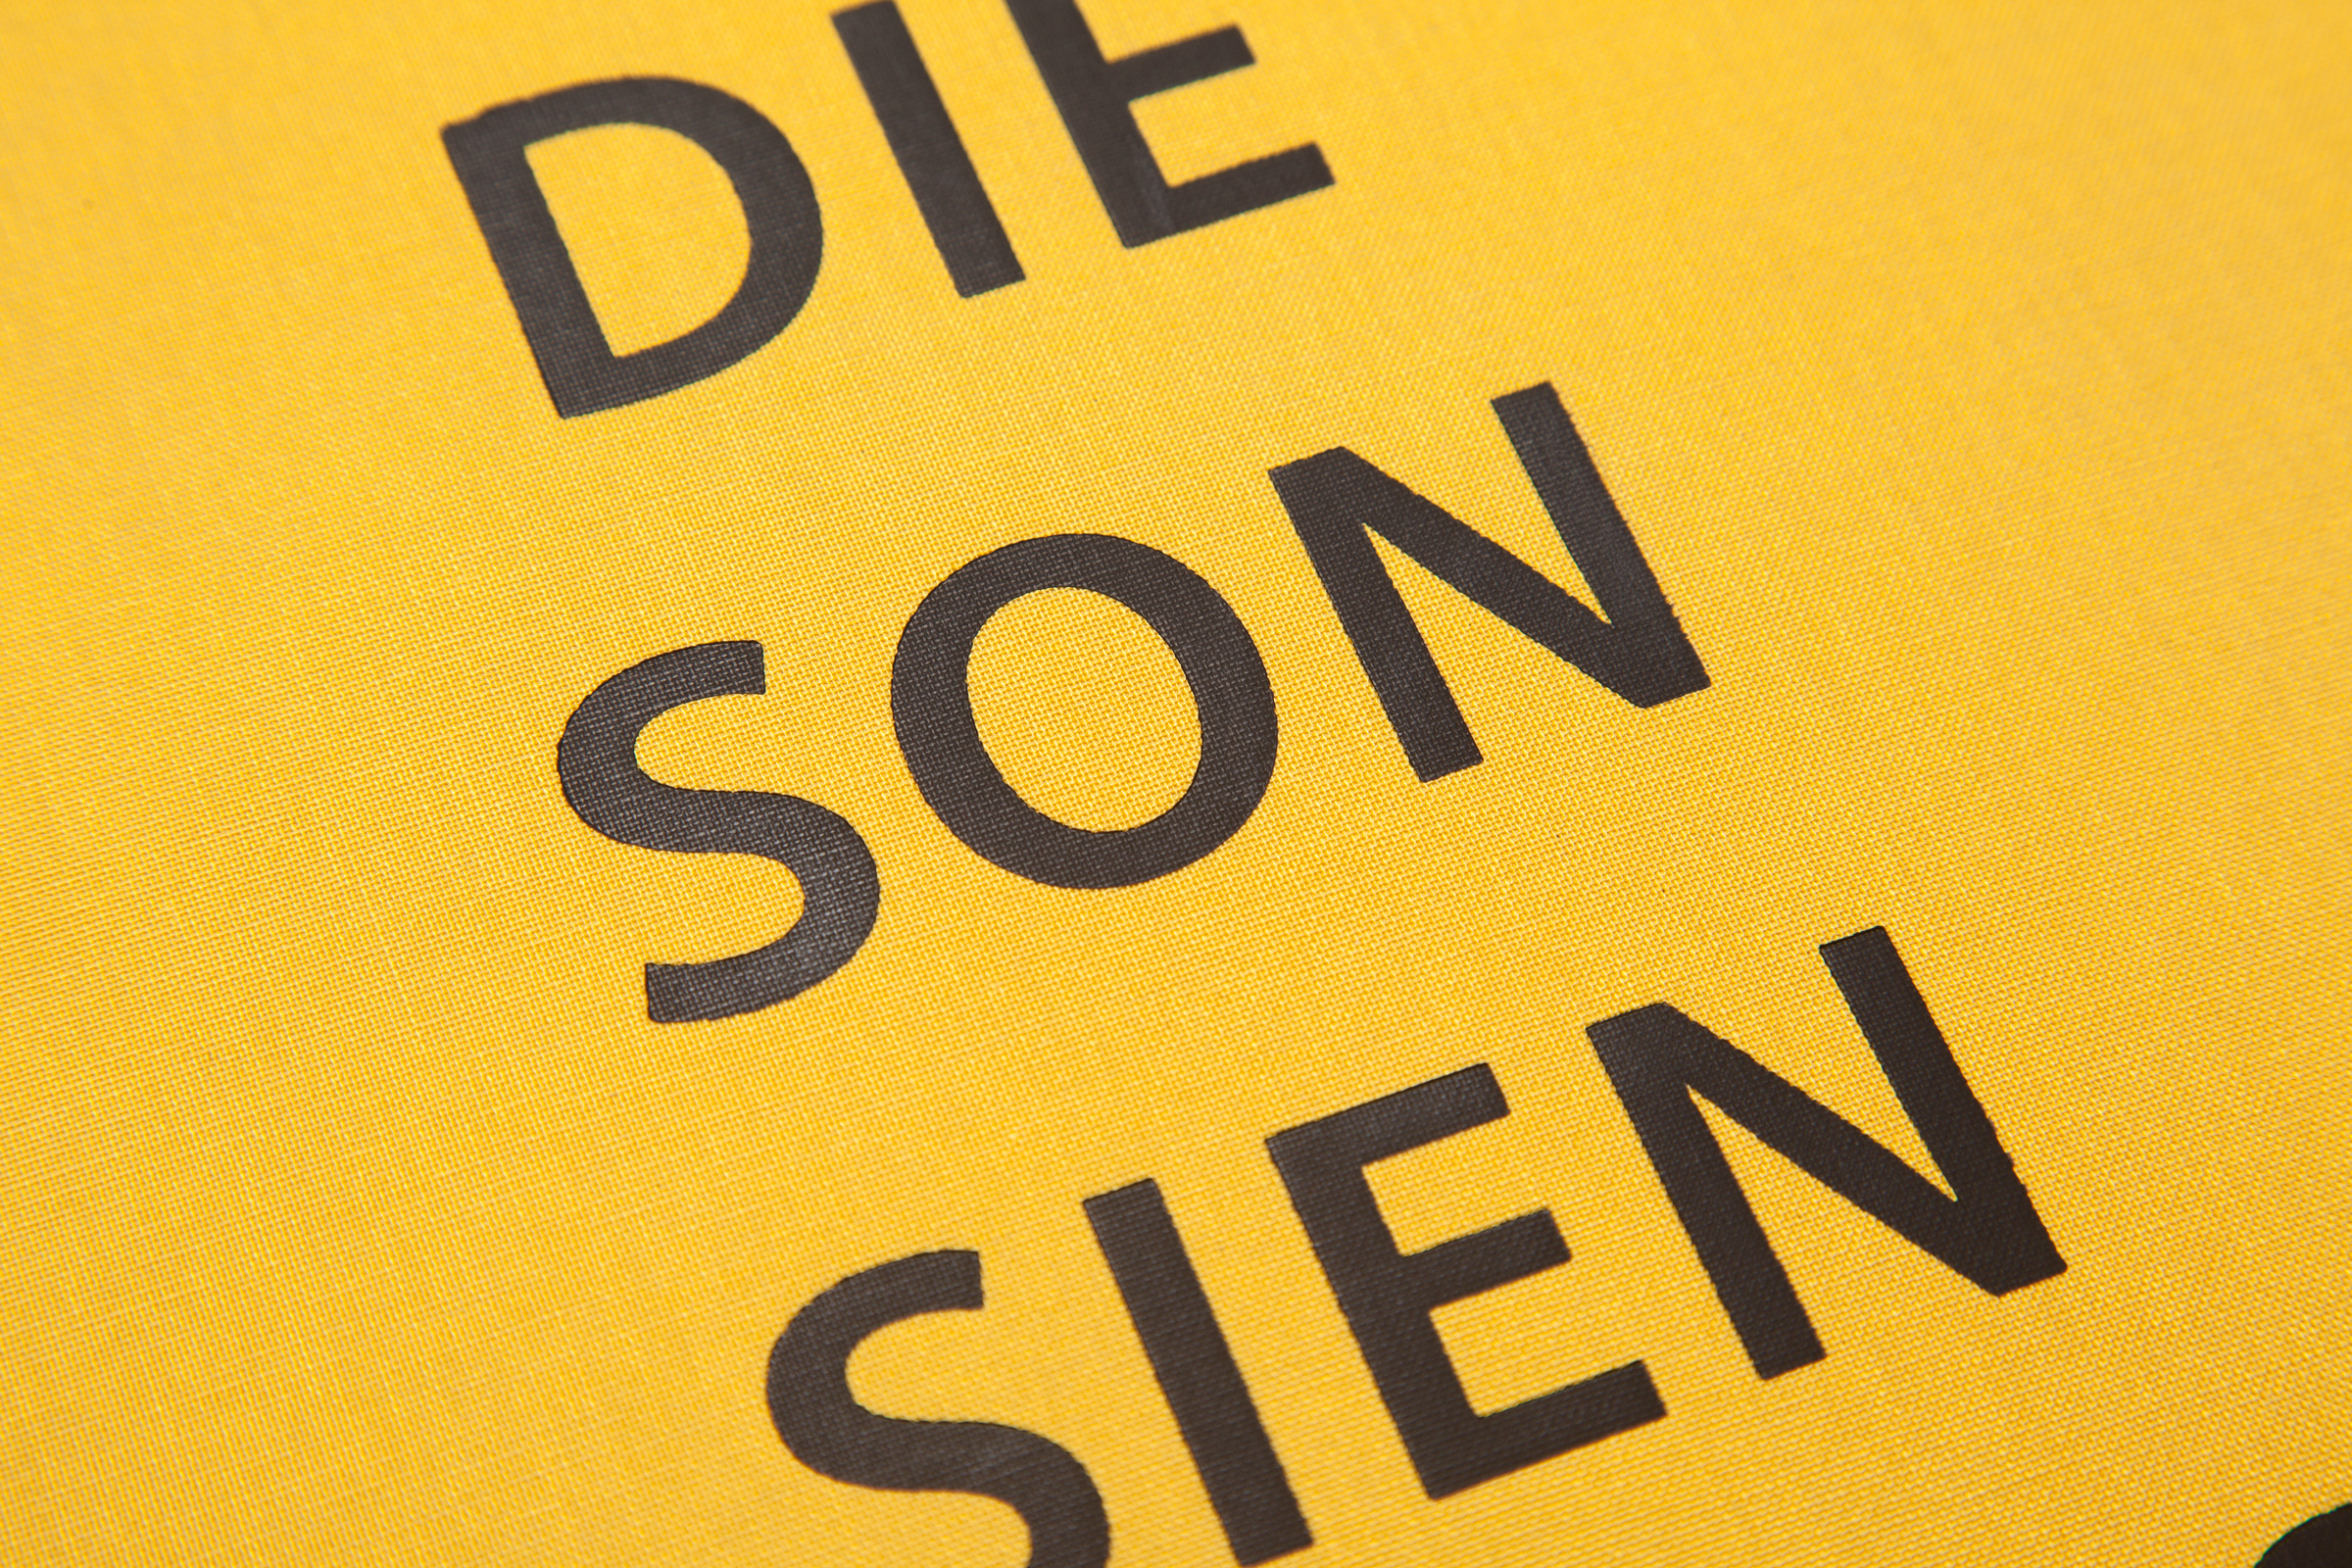 Vivianne Sassen — Die Son Sien Alles — Book